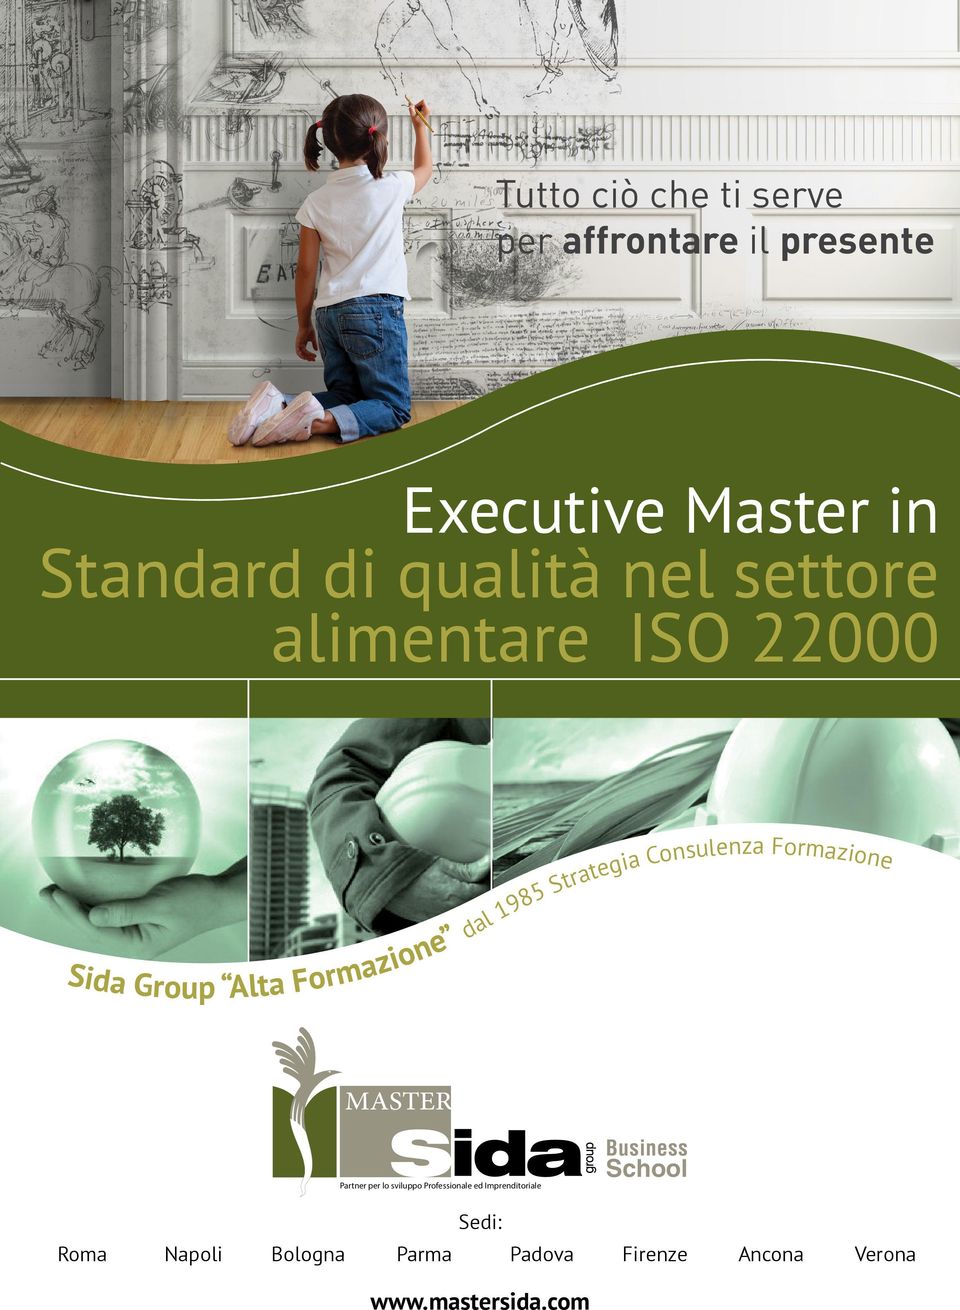 Strategia Consulenza Formazione Business School Sedi: Roma